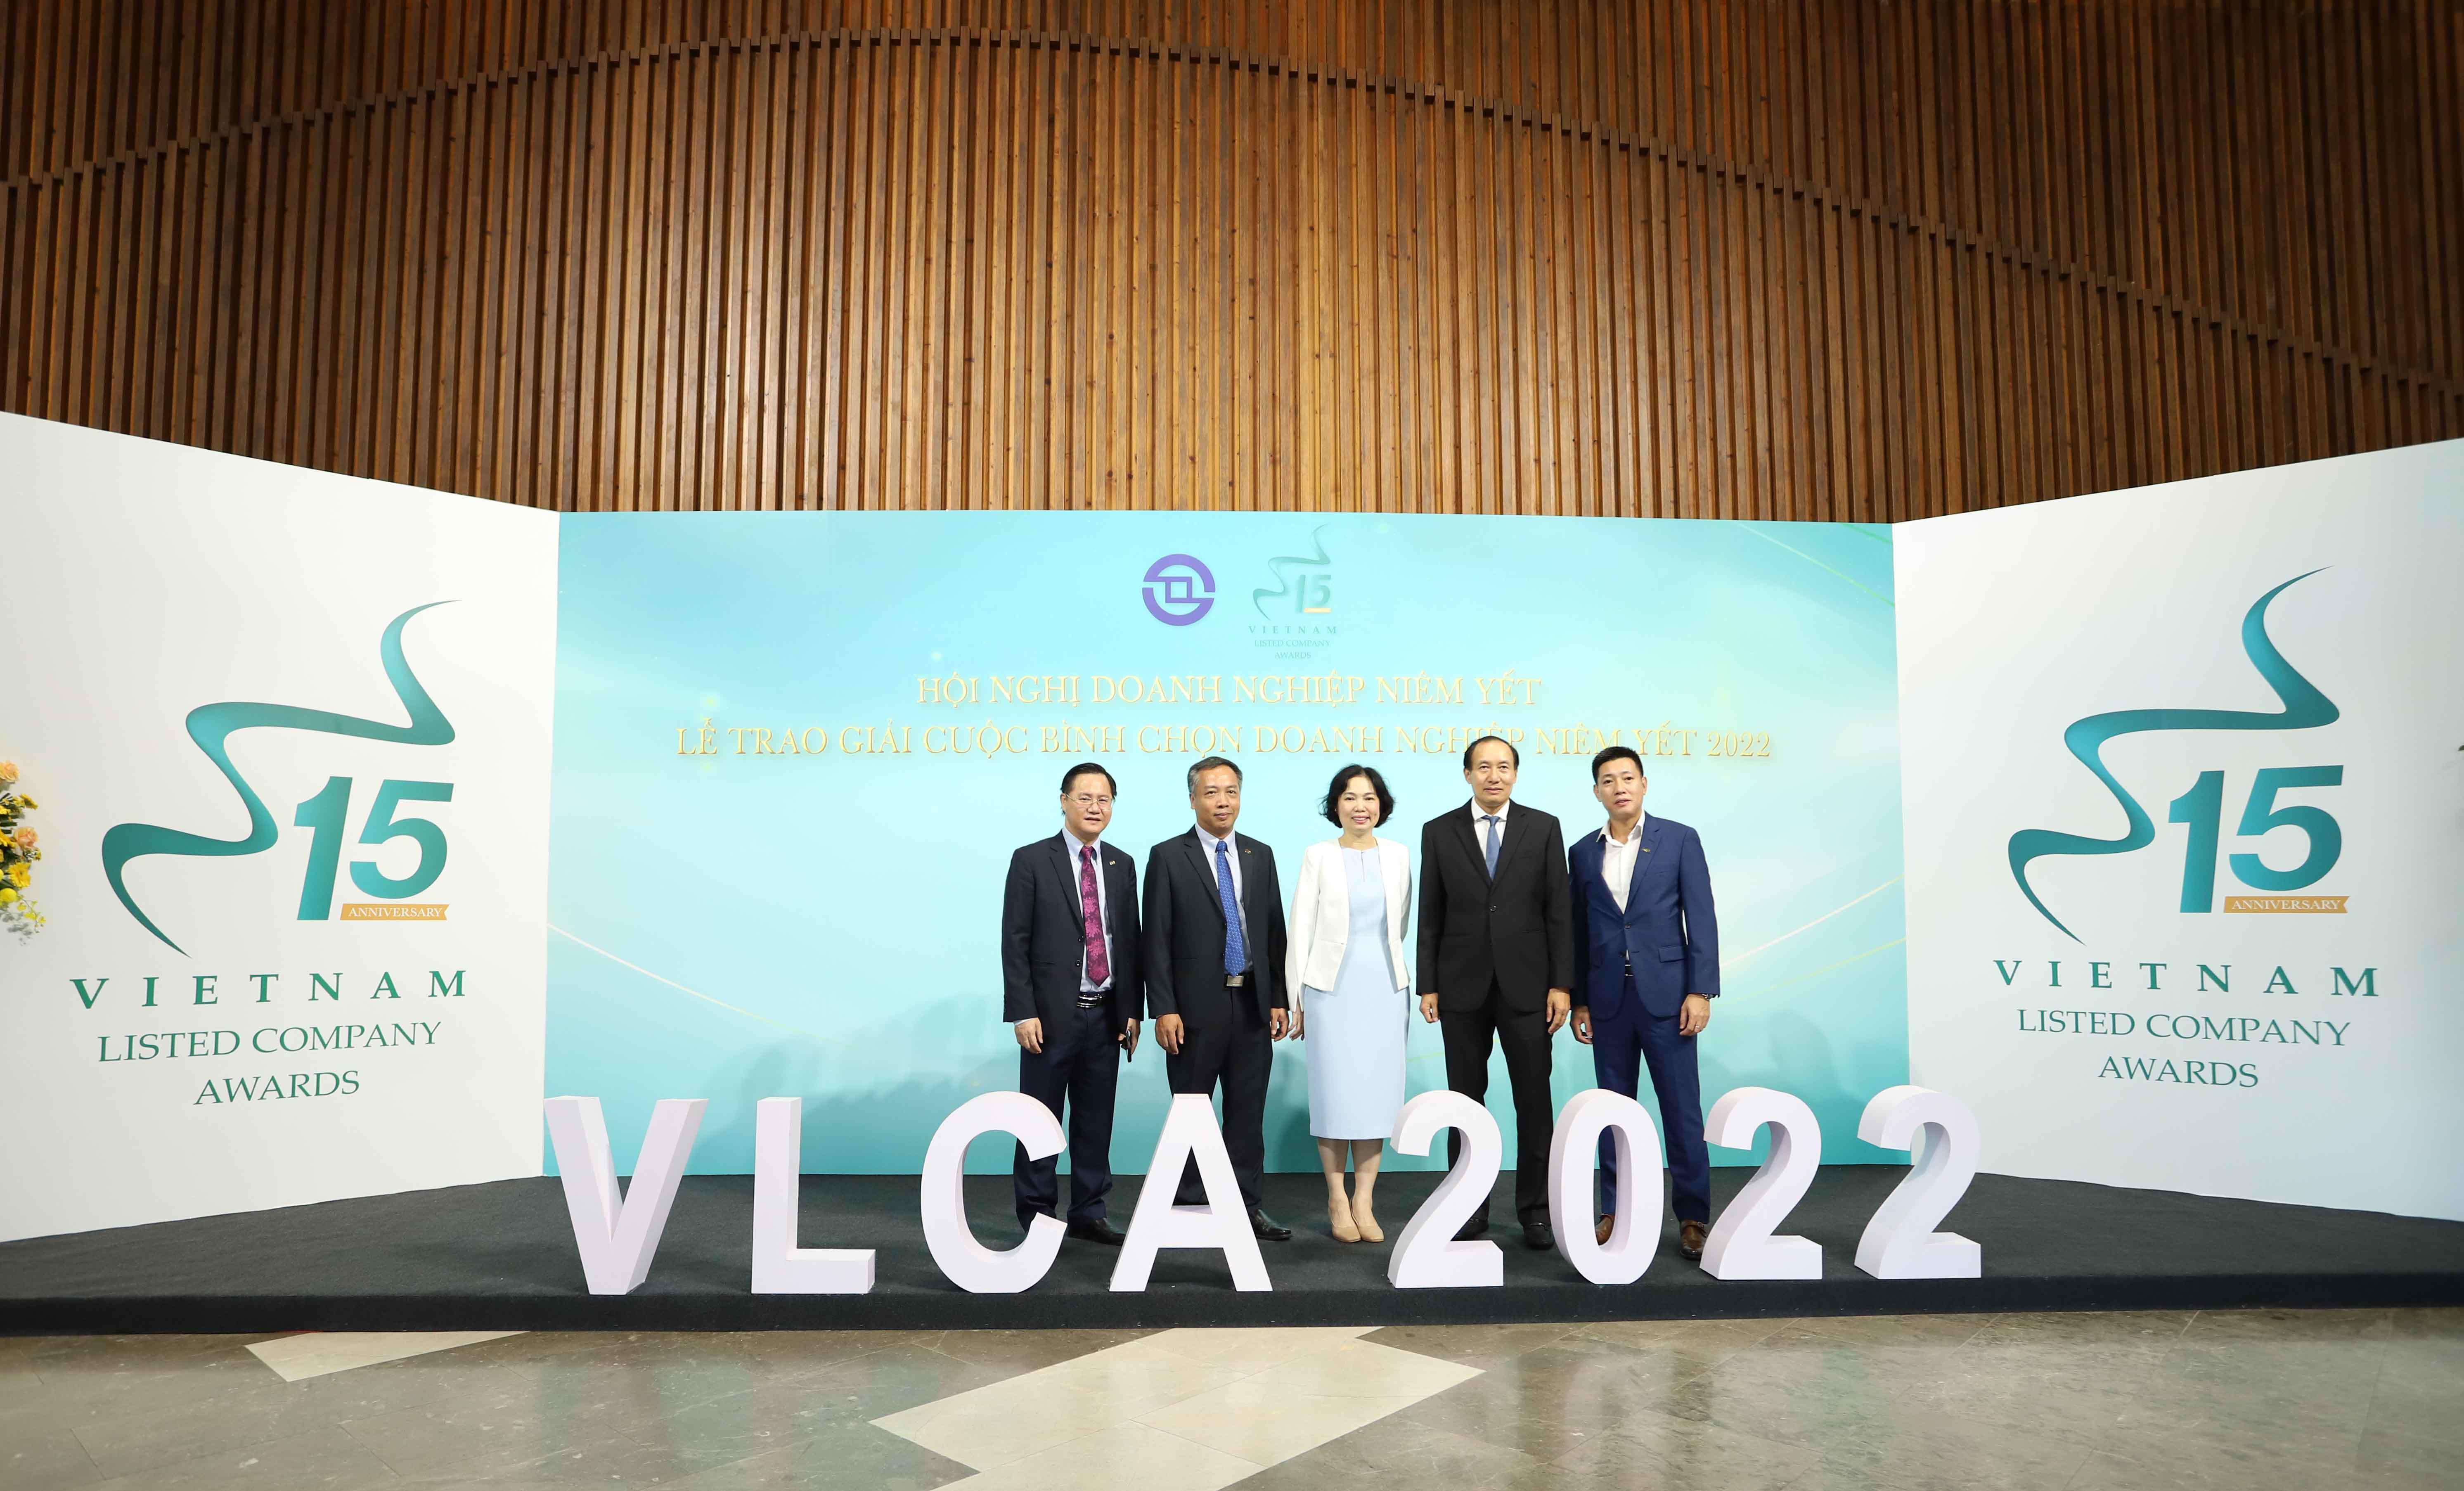 Toàn cảnh Hội nghị doanh nghiệp niêm yết và lễ vinh danh các doanh nghiệp đoạt giải VLCA 2022 